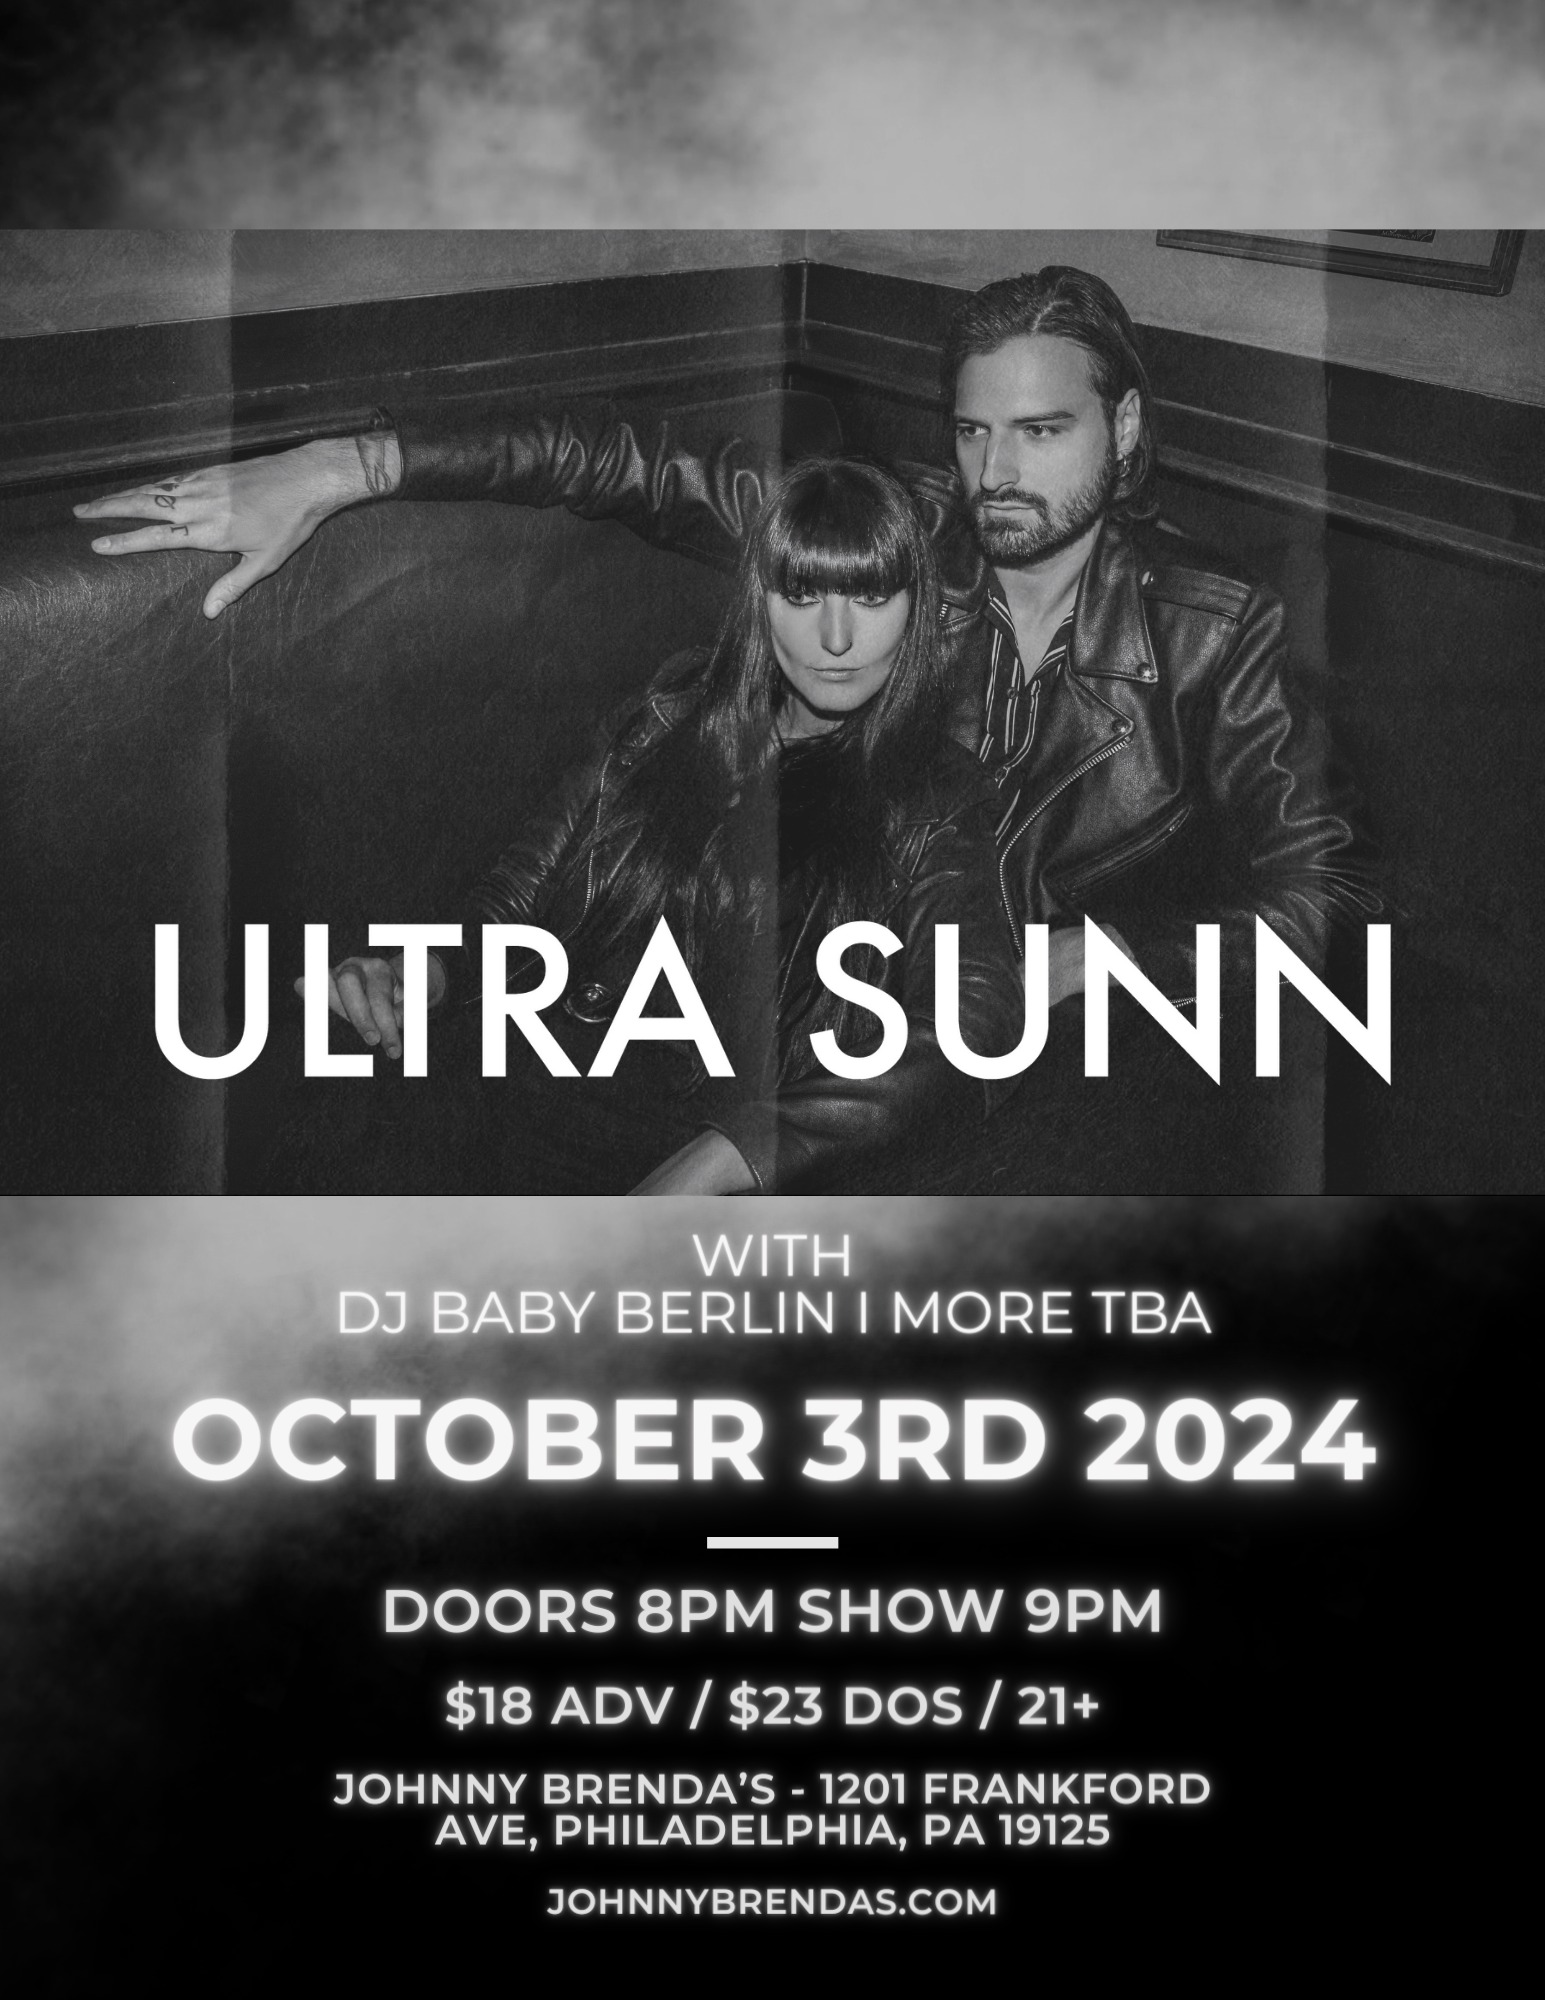 Ultra Sunn, Night Sins, Voix In The Dark, & DJ Baby Berlin